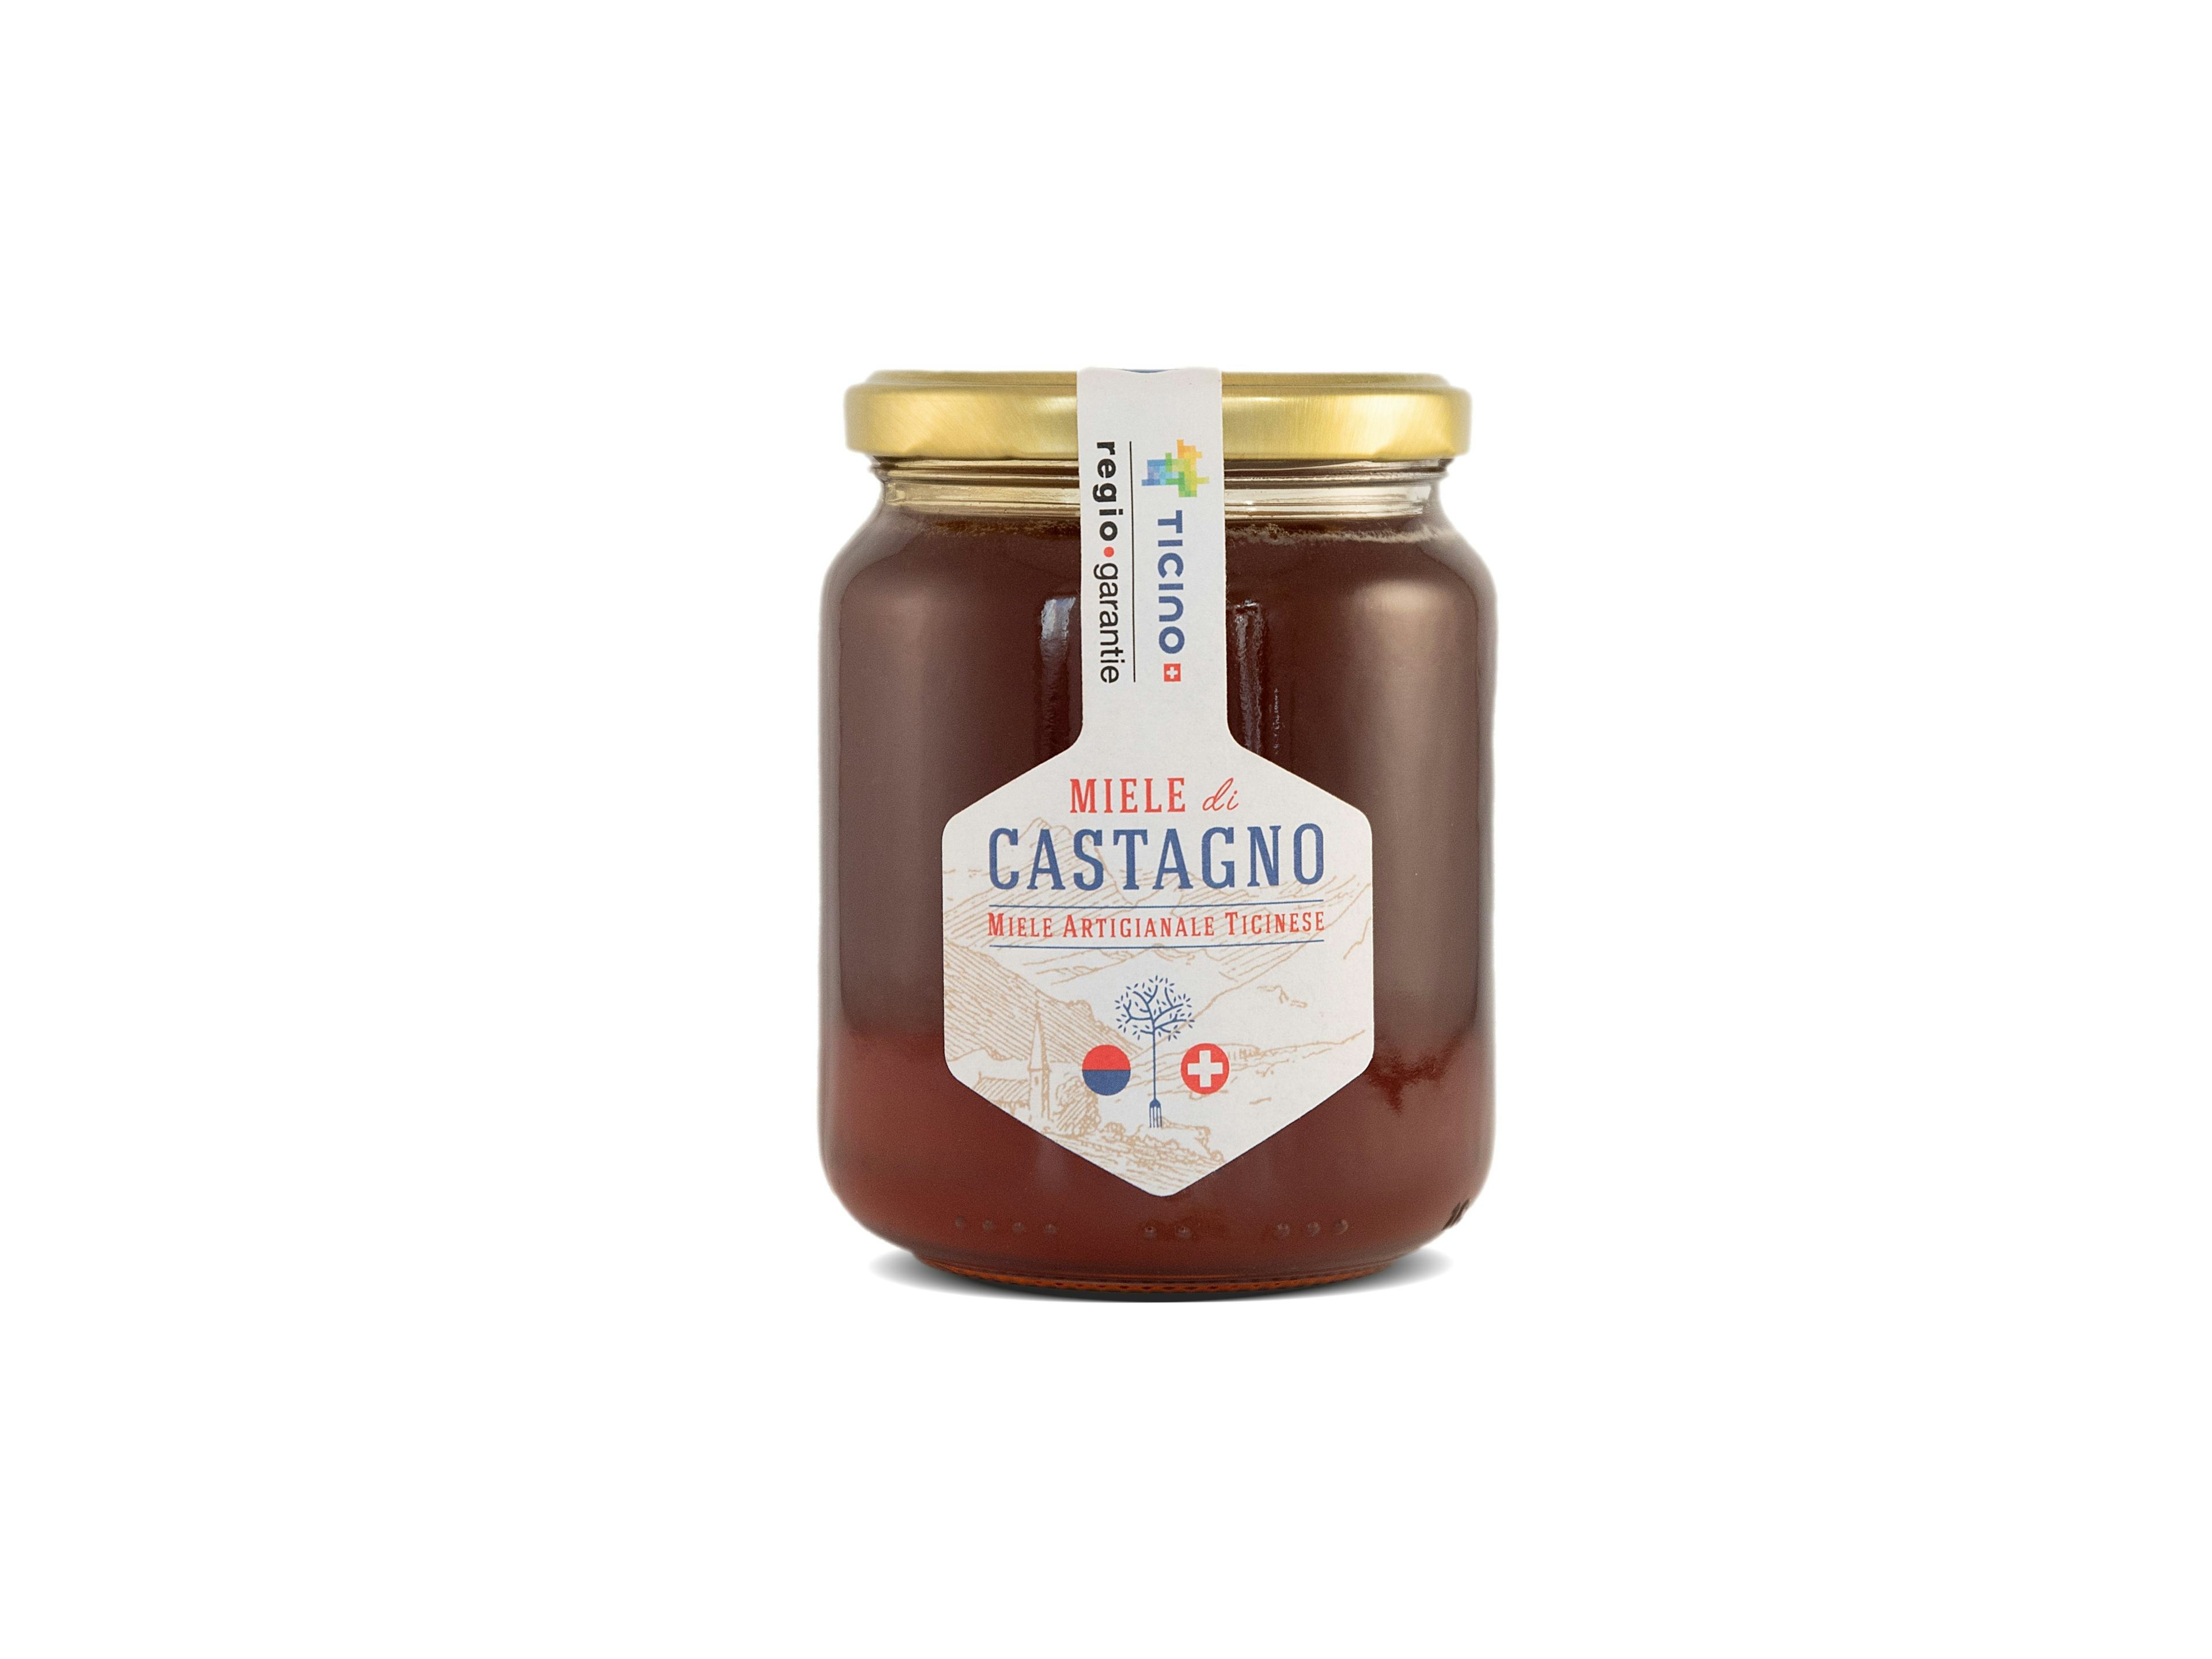 Miele di Castagno da 500g, prodotto artigianale per la vendita diretta in Svizzera